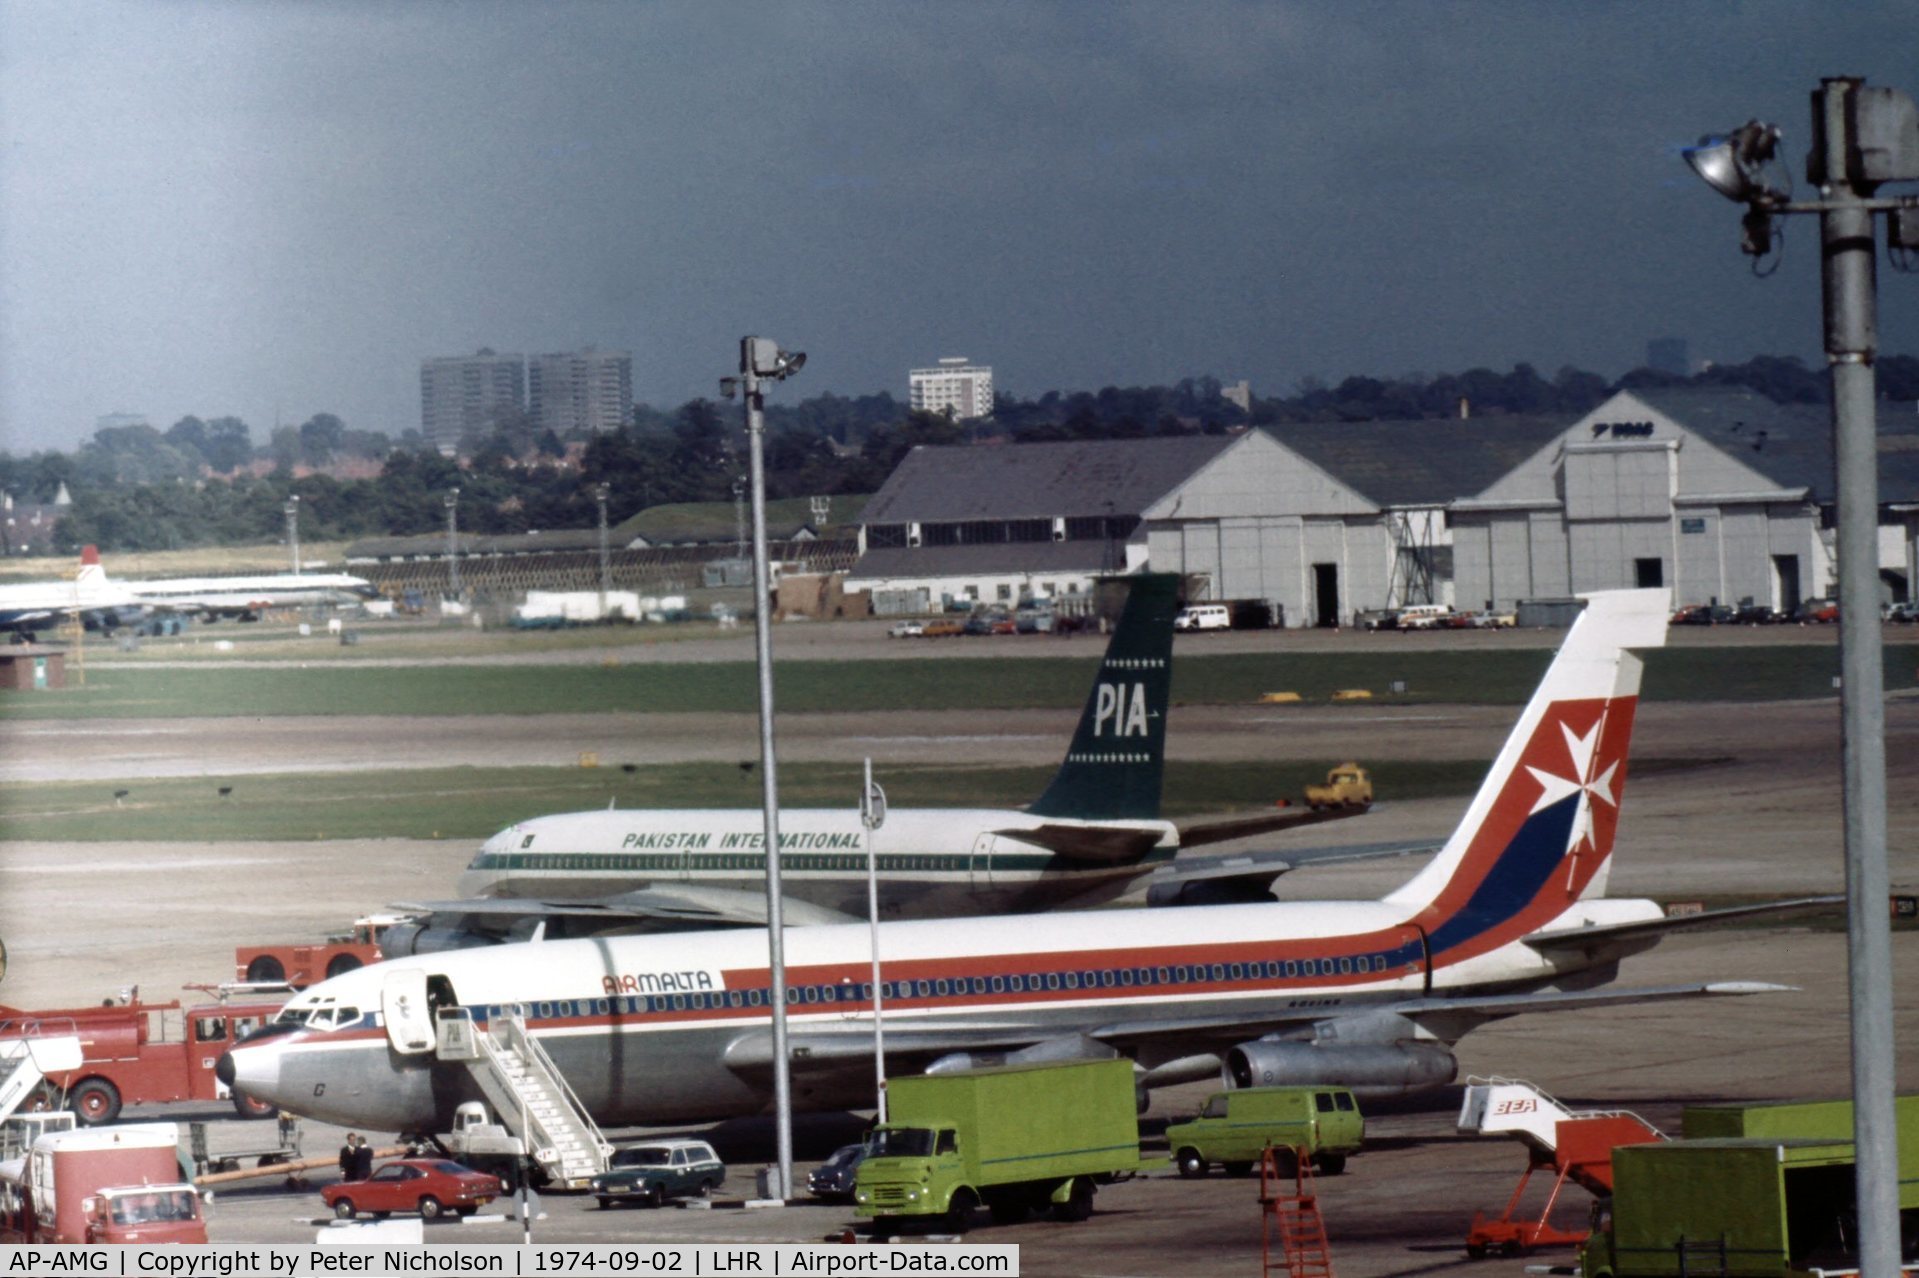 AP-AMG, 1961 Boeing 720-047B C/N 18378, Leased by Air Malta from Pakistan International Airways, this Boeing 720 was seen at Heathrow in September 1974.